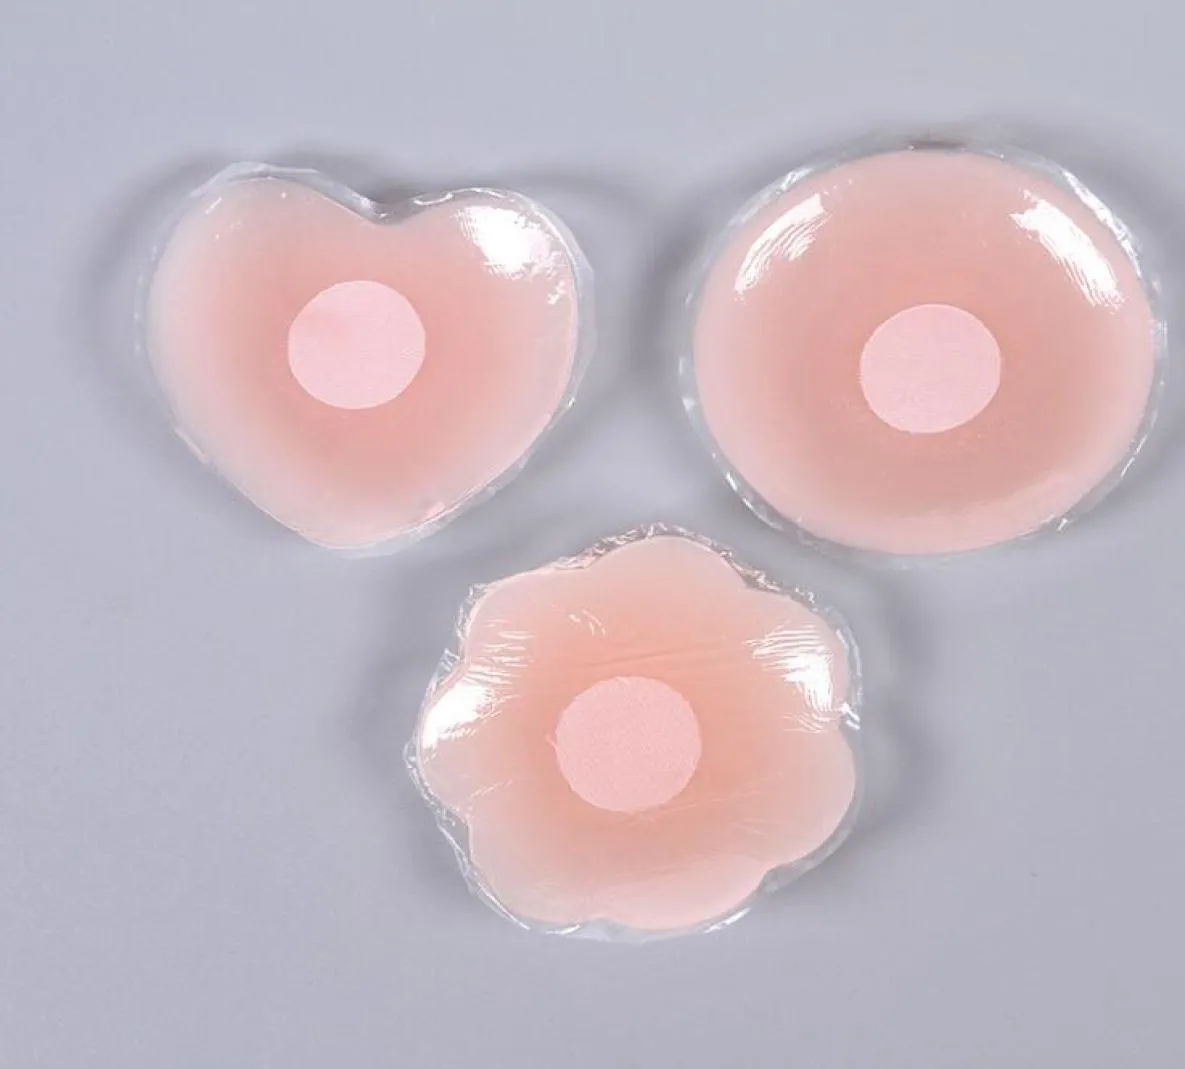 Женщины невидимые белки сексуальные многоразовые круглые грудные сиськи самостоятельно клей